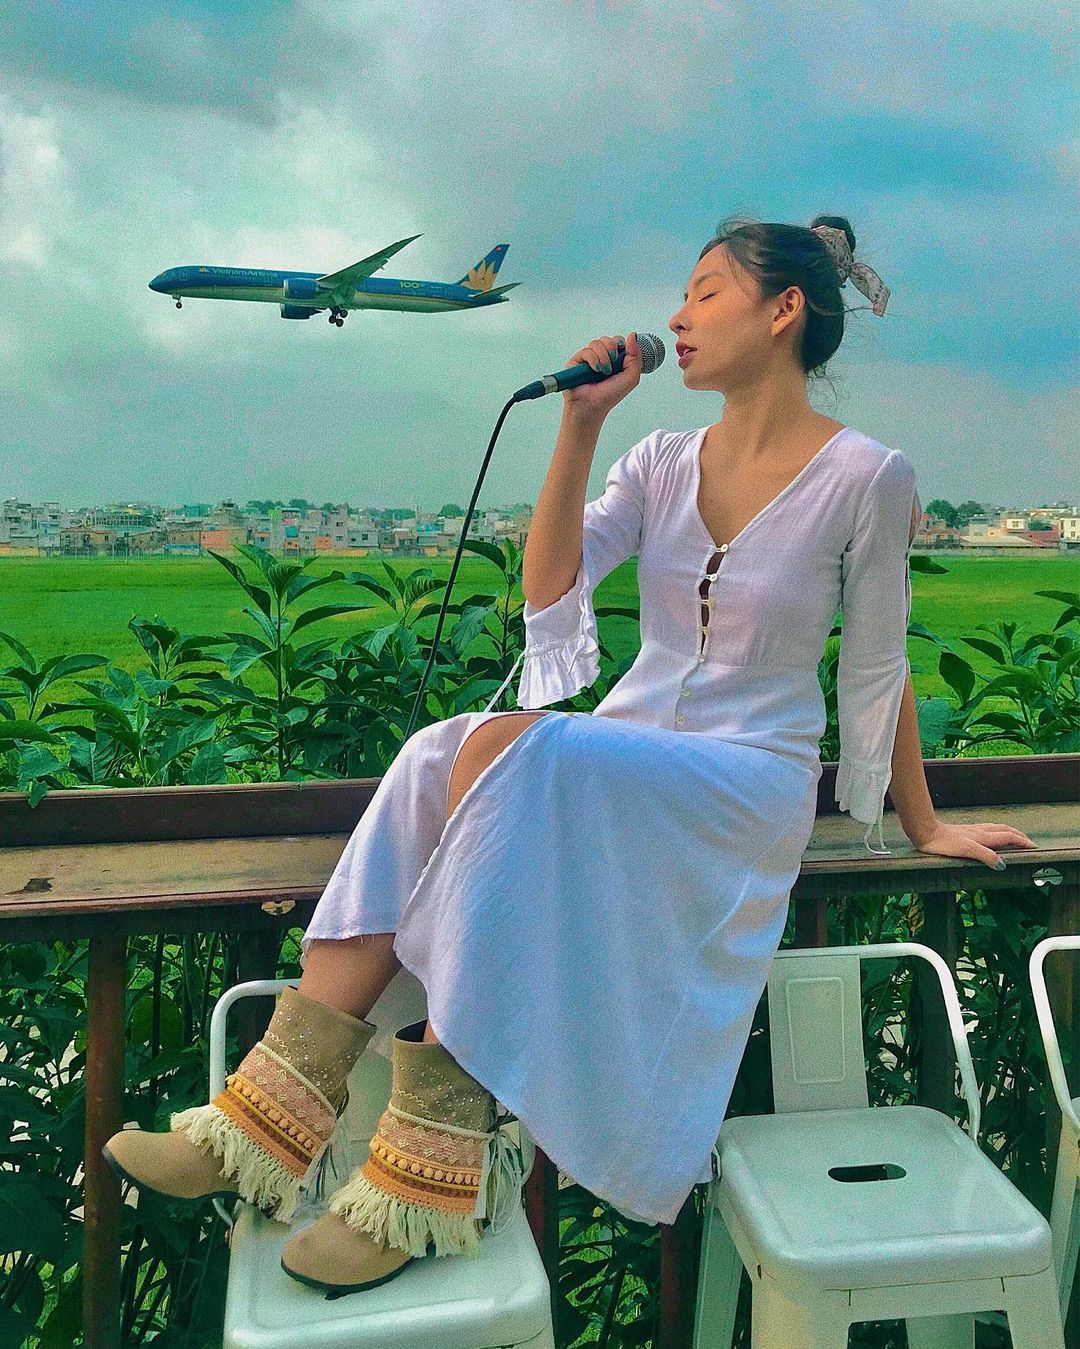 quán cà phê ngắm máy bay ở Sài Gòn 1